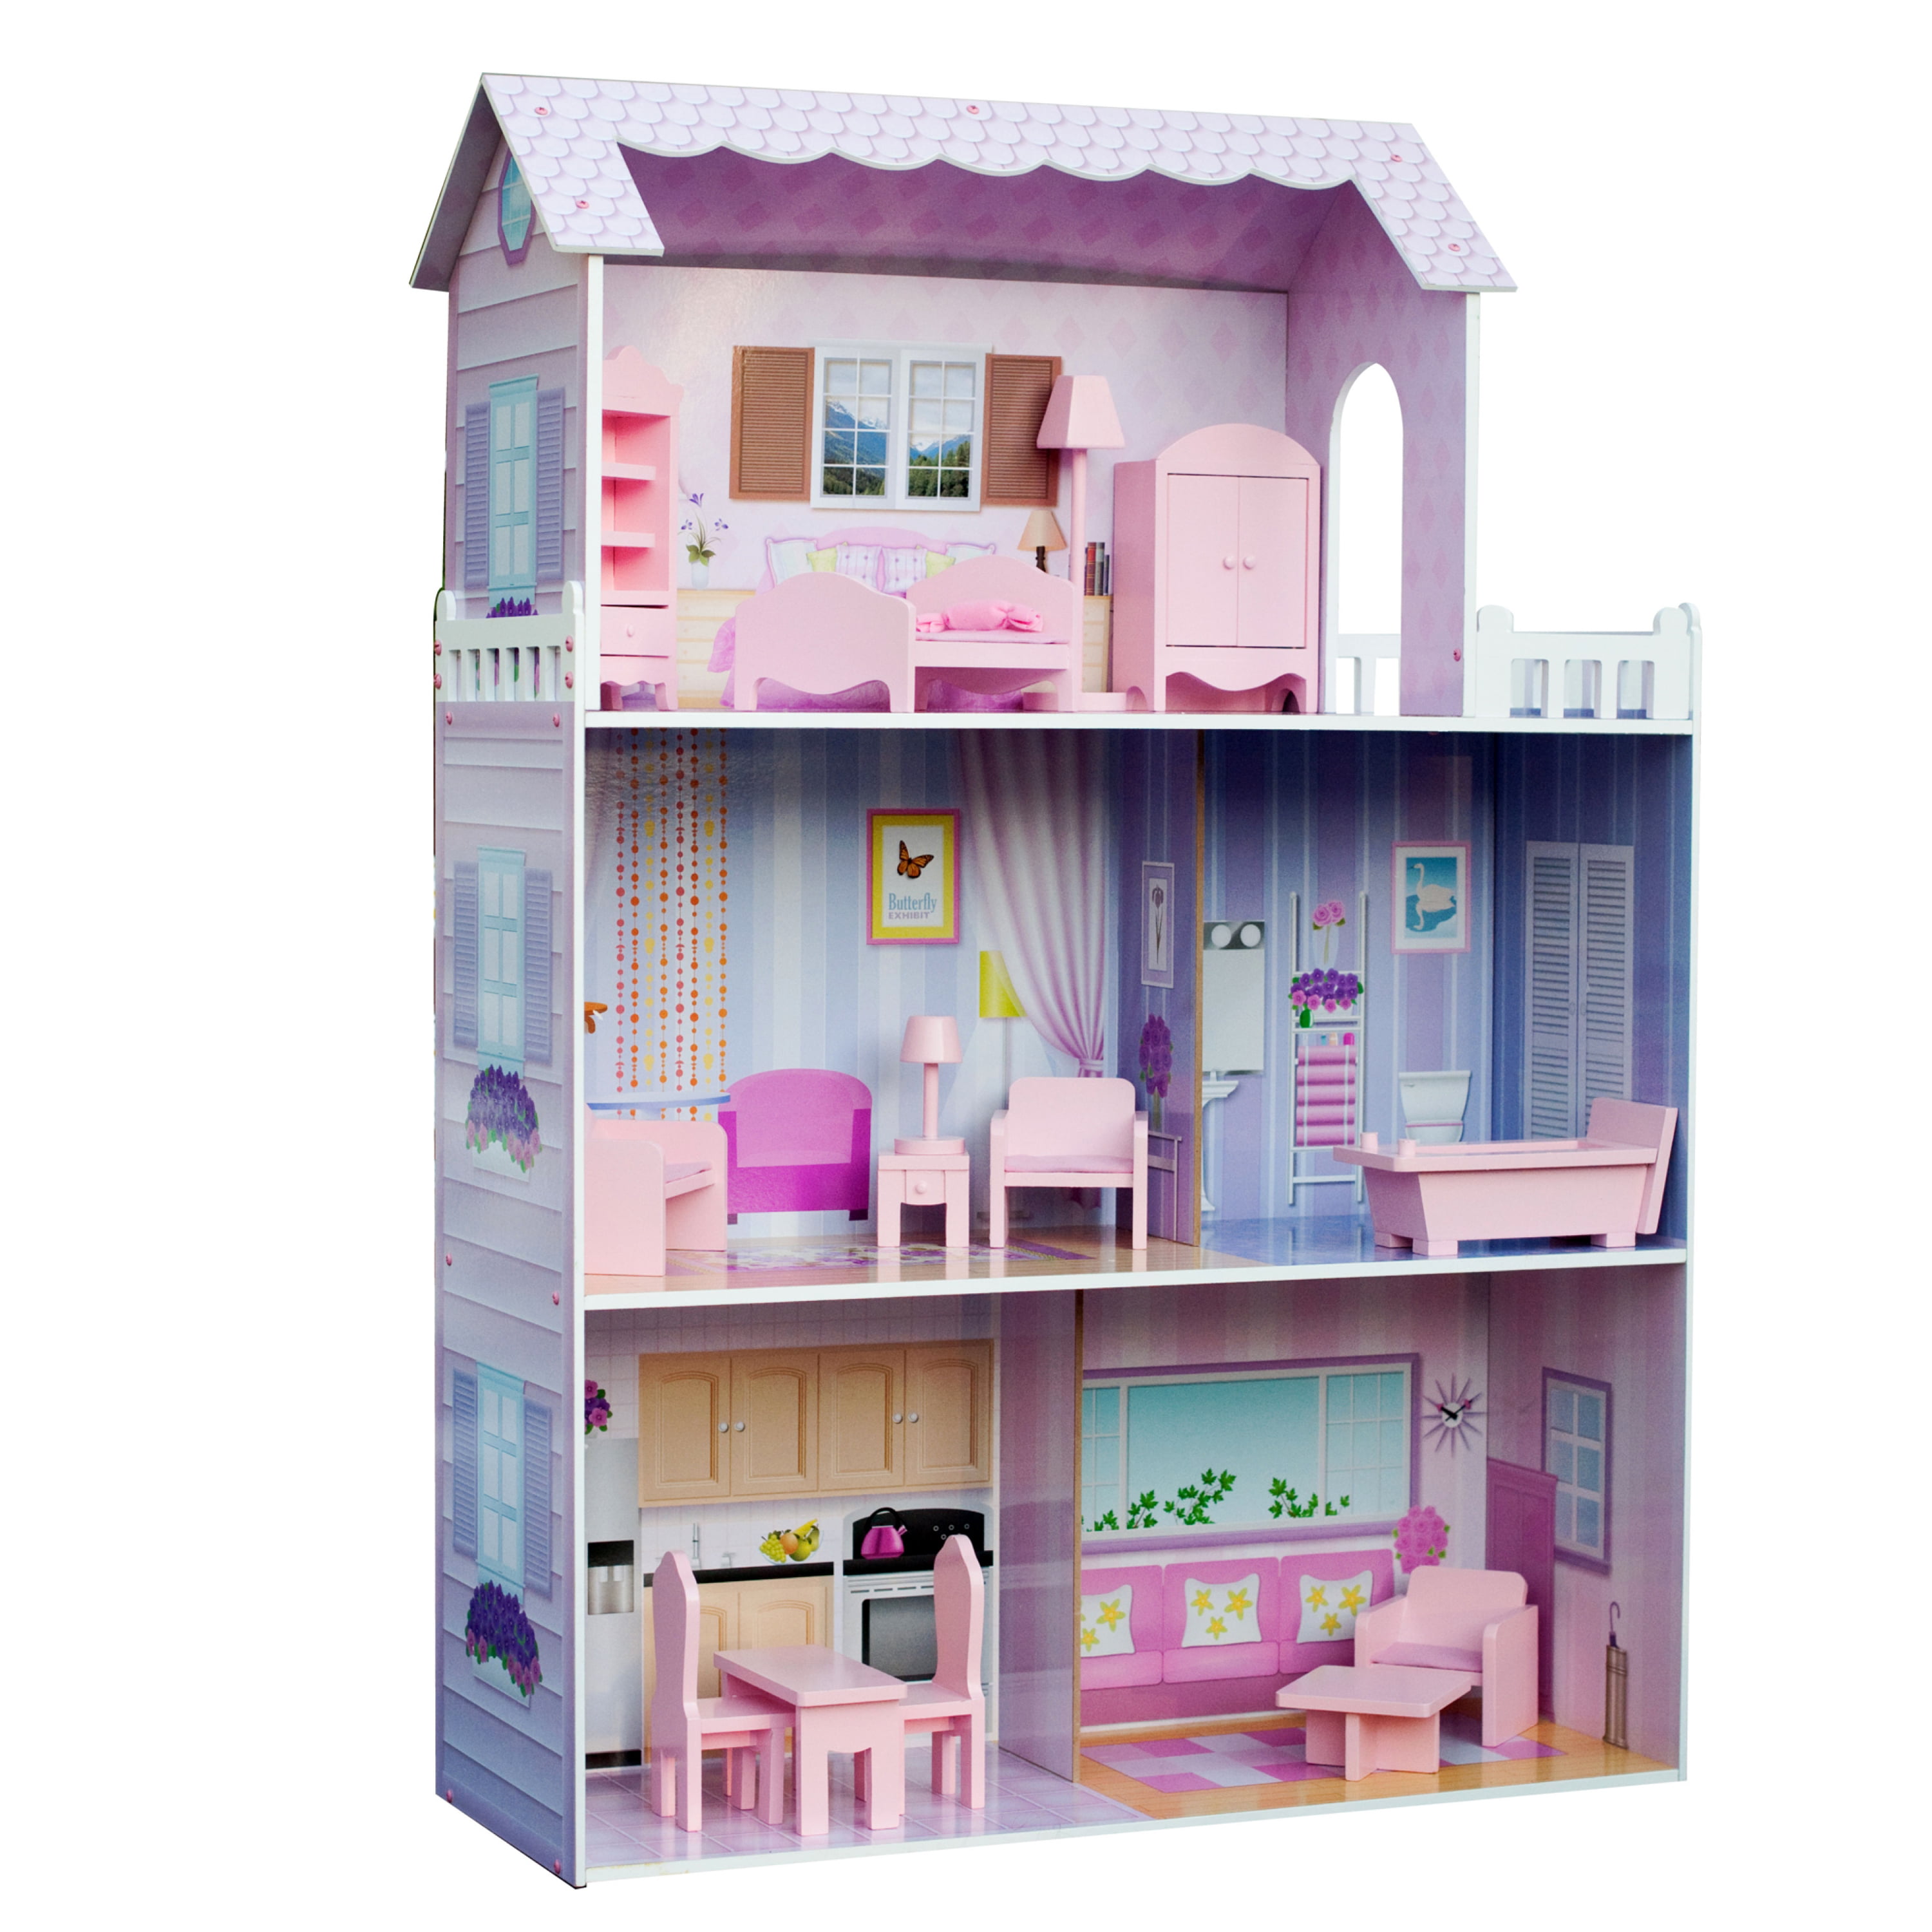 Кукольный дом куклы. Кукольный дом kids4kids. Кукольный домик Doll House. Кукольный домик Мансион. Домик для Барби розовый Dollhouse.